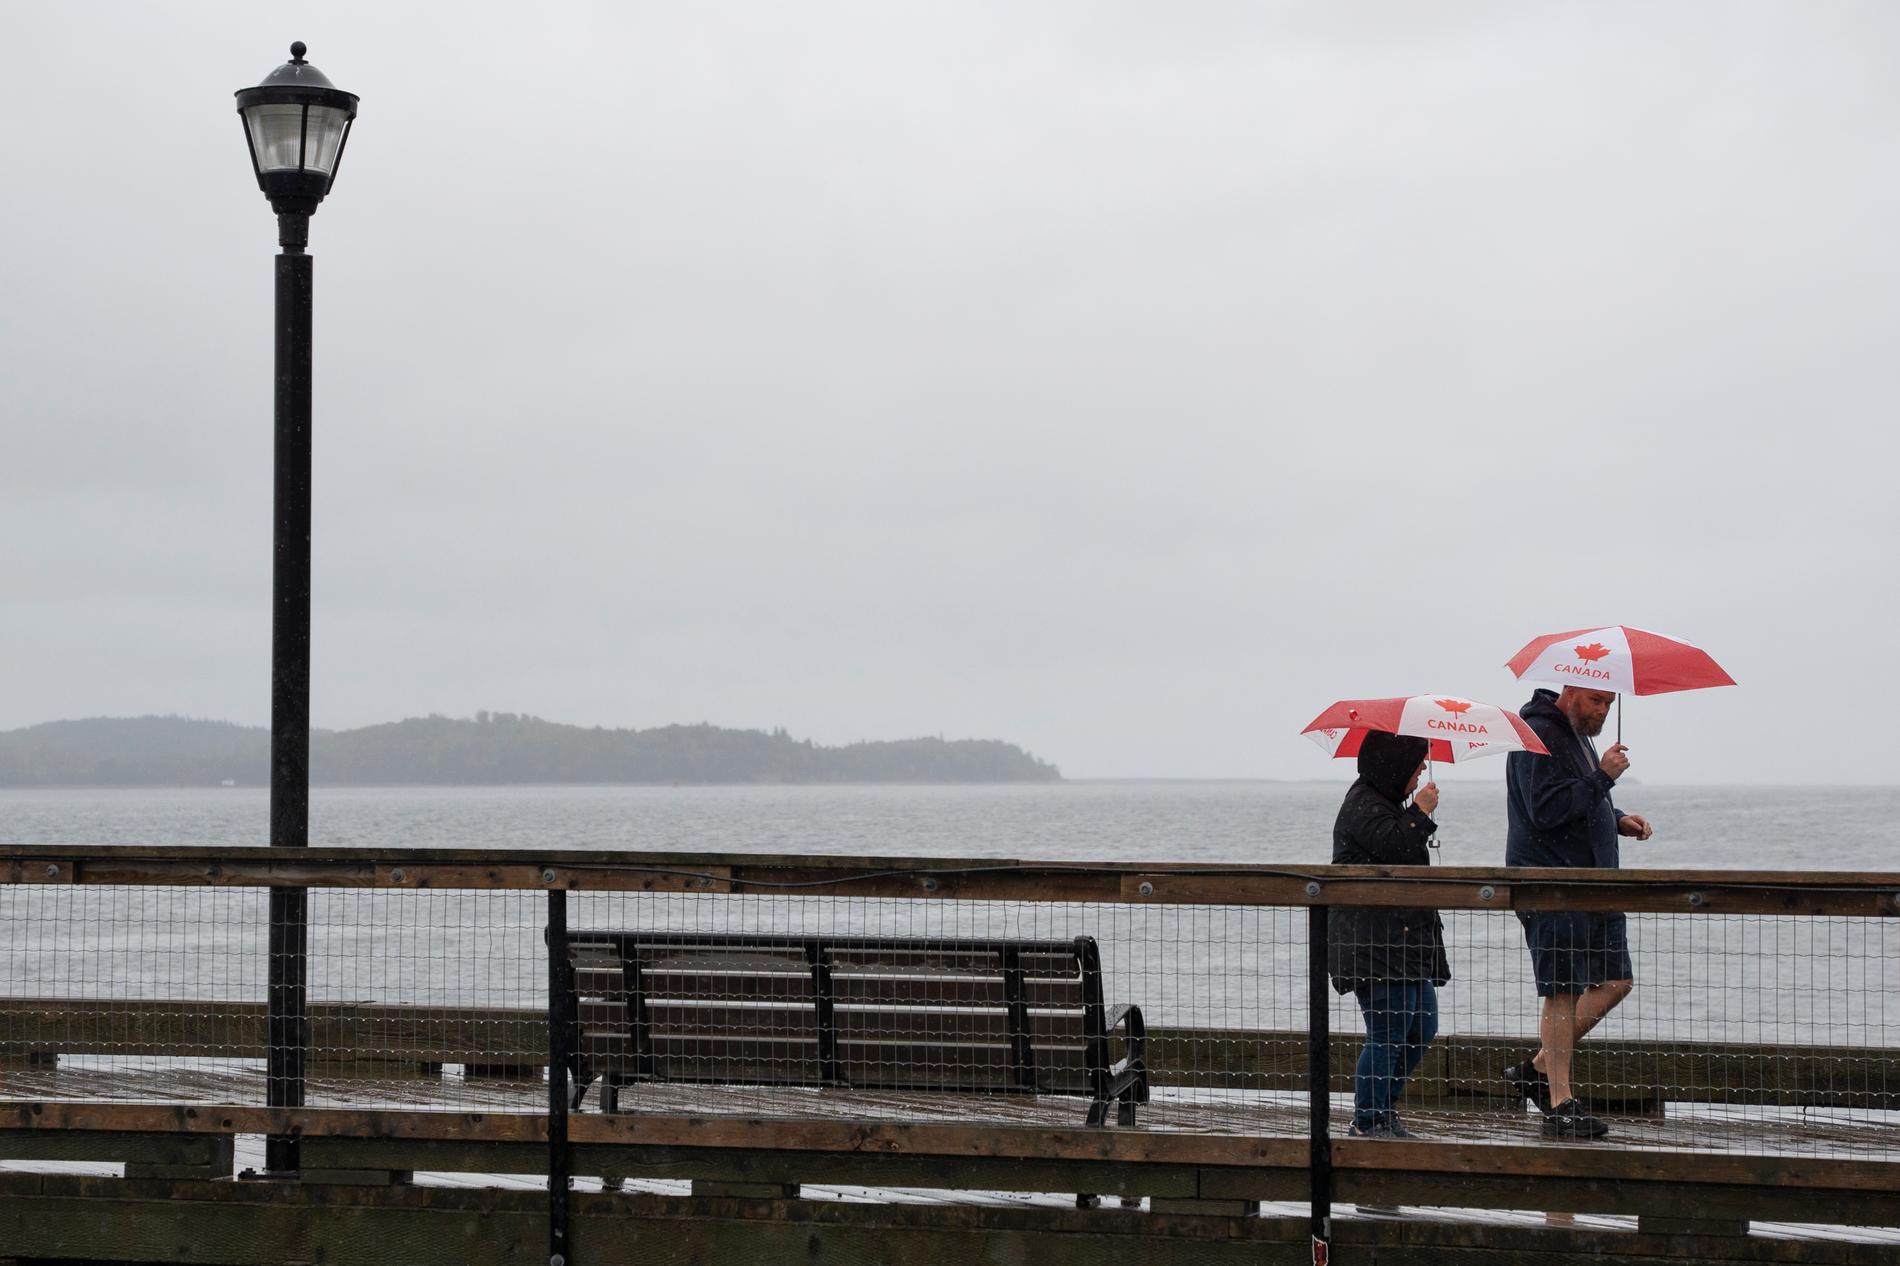 Människor på promenad i regnet, längs med en kaj i Halifax, provinshuvudstaden i kanadensiska Nova Scotia.